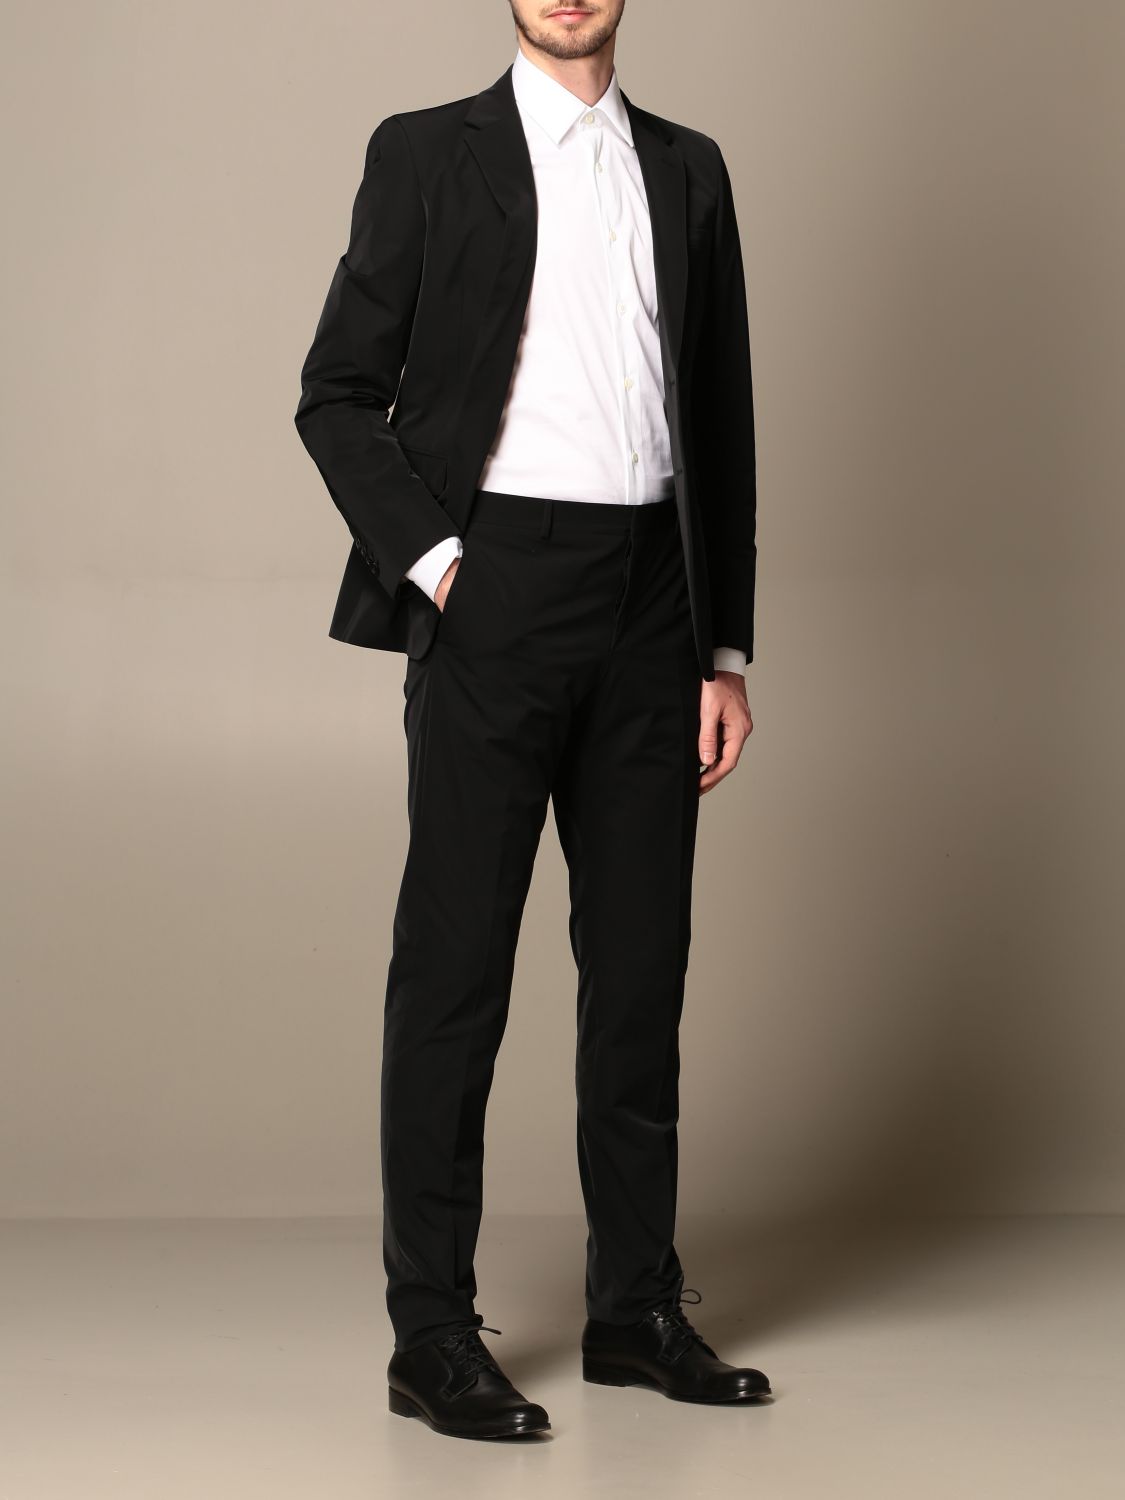 PRADA: Classic single-breasted suit | Suit Prada Men Black | Suit Prada ...